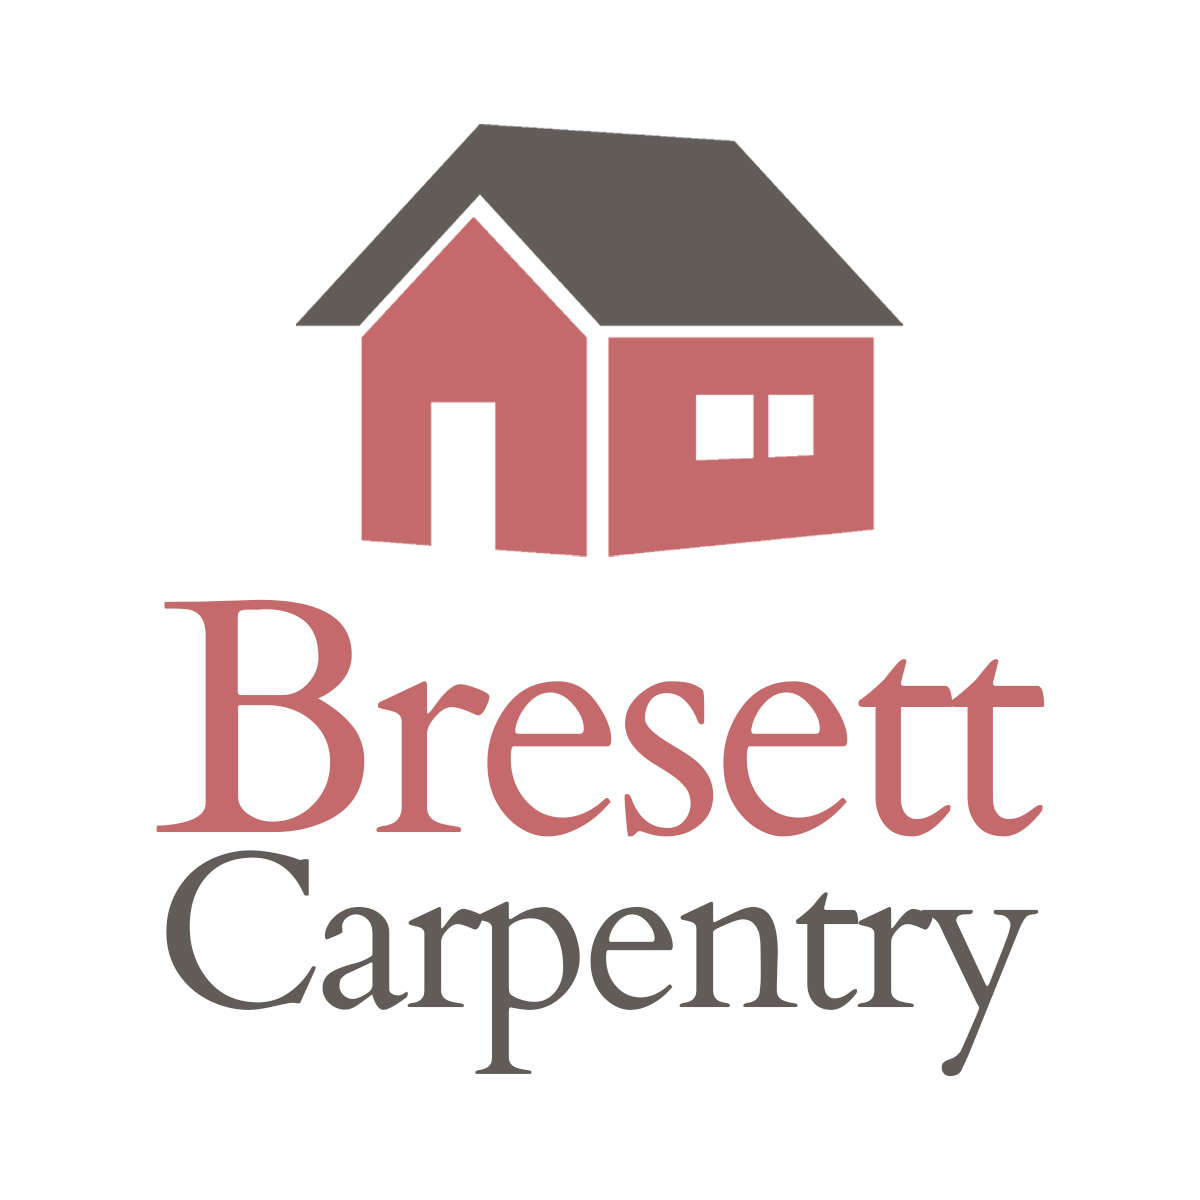 Bresett Carpentry Logo